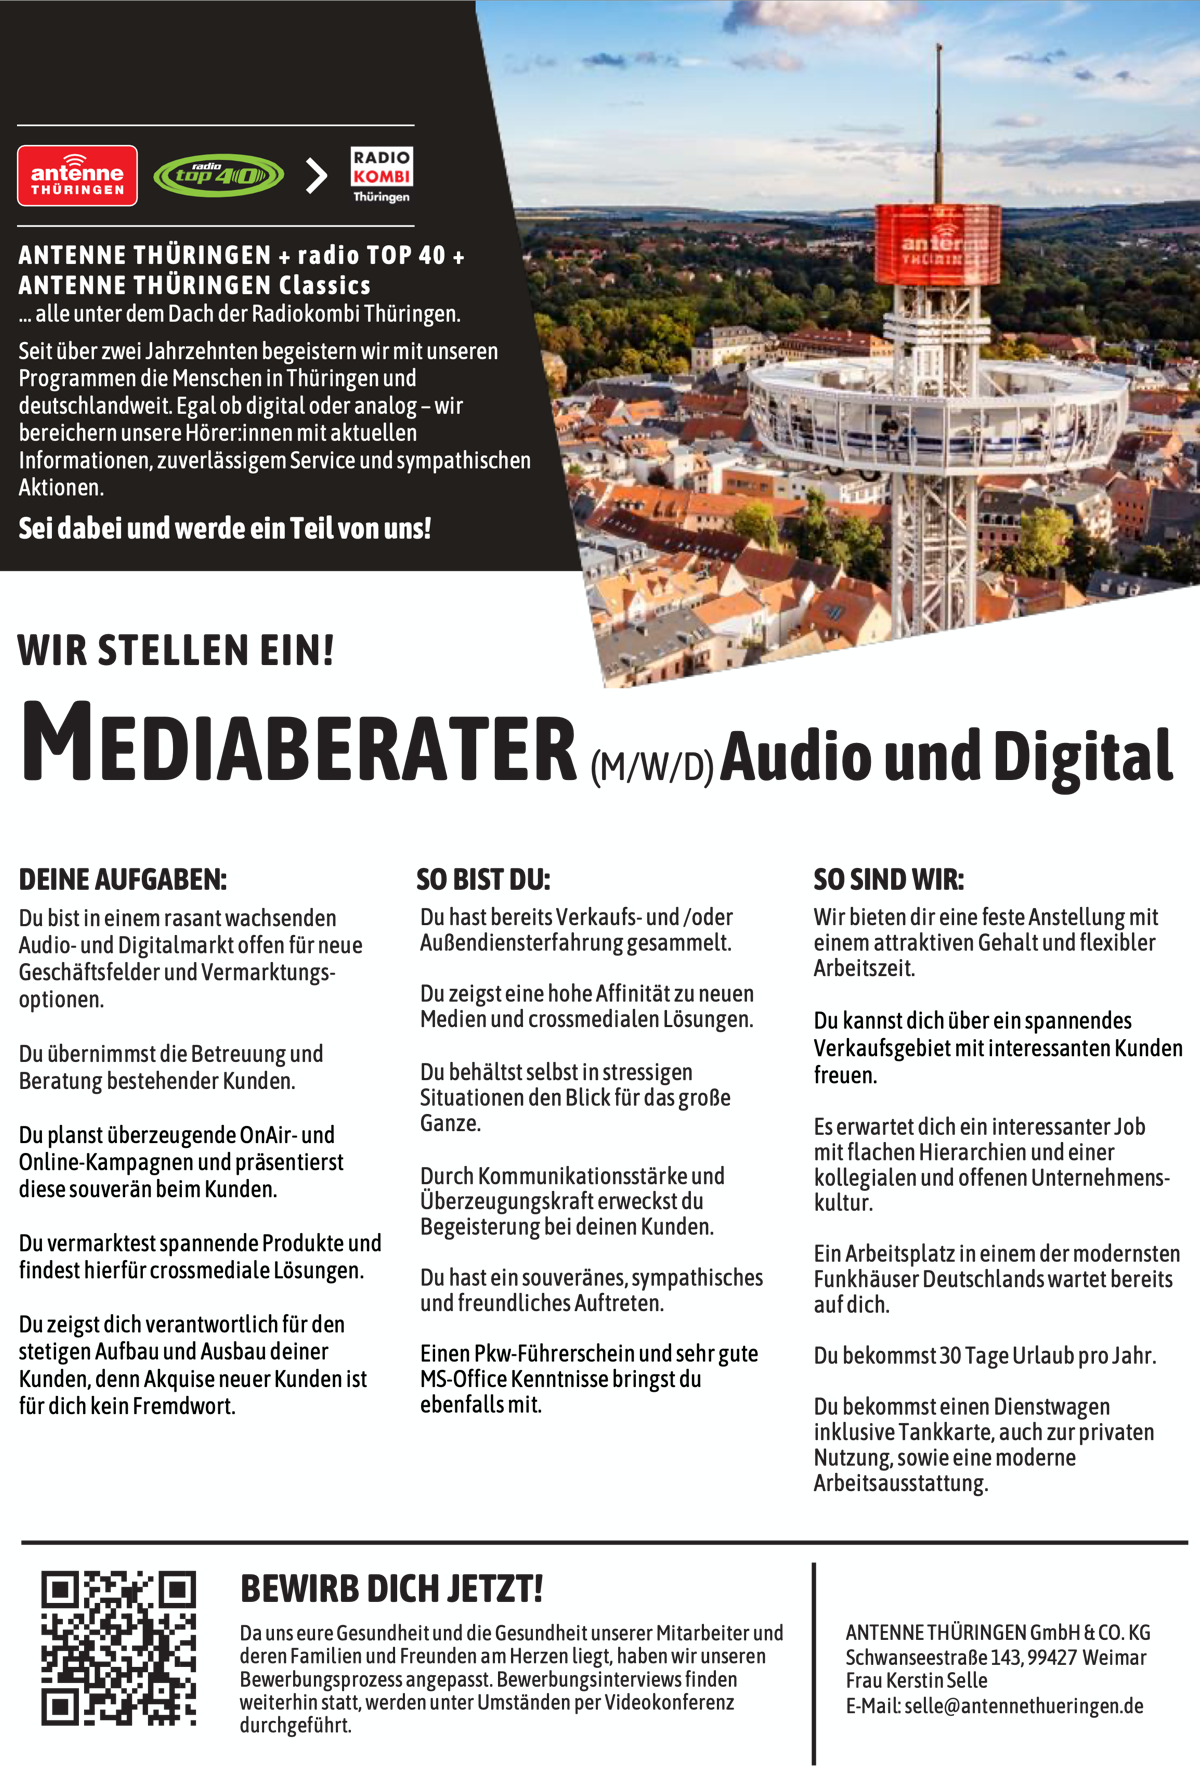 ANTENNE THÜRINGEN sucht Mediaberater (m/w/d) Audio und Digital